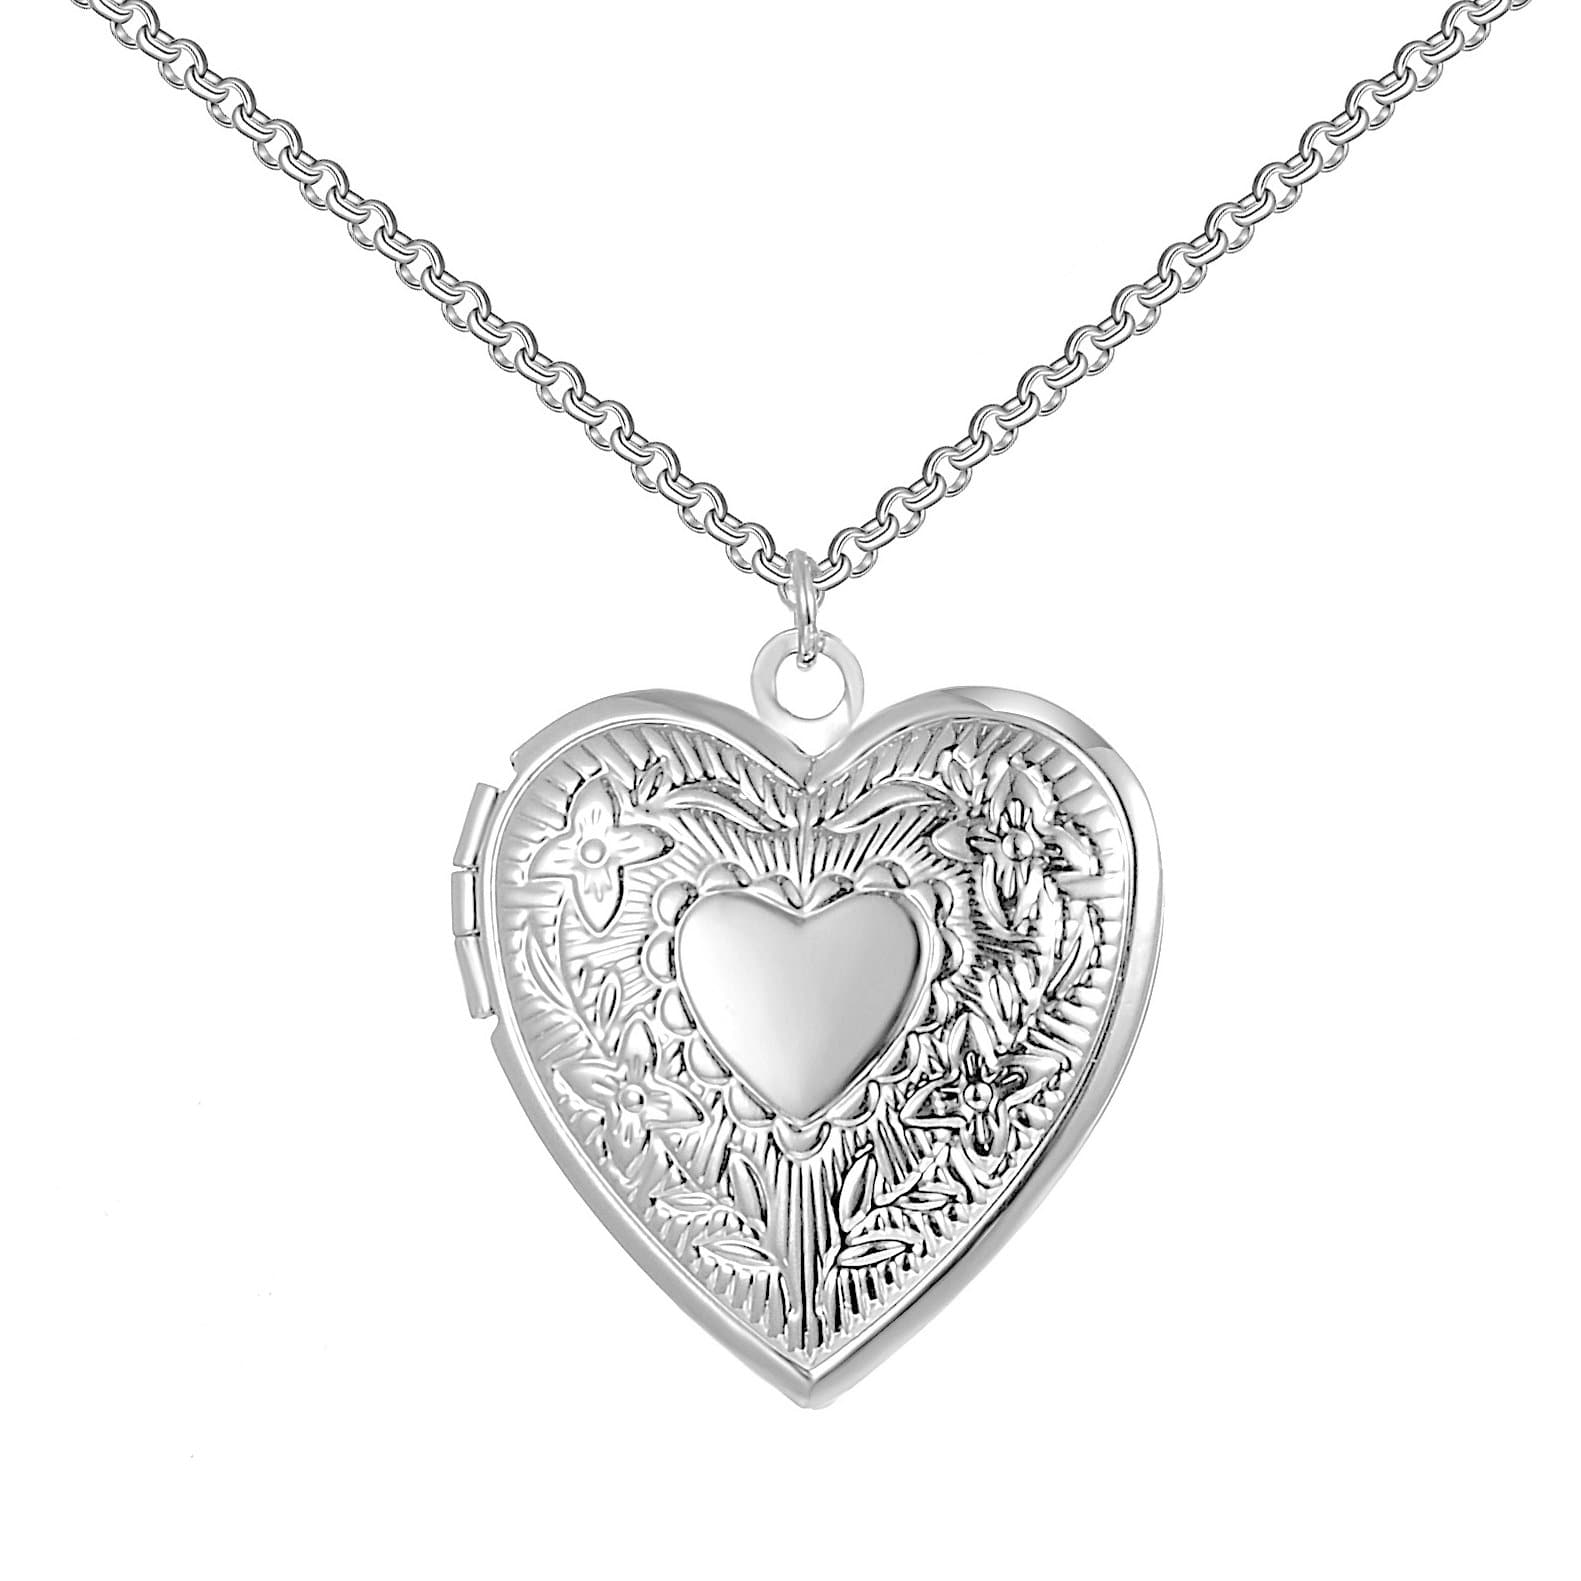 Silver Plated Heart Locket by Philip Jones Jewellery